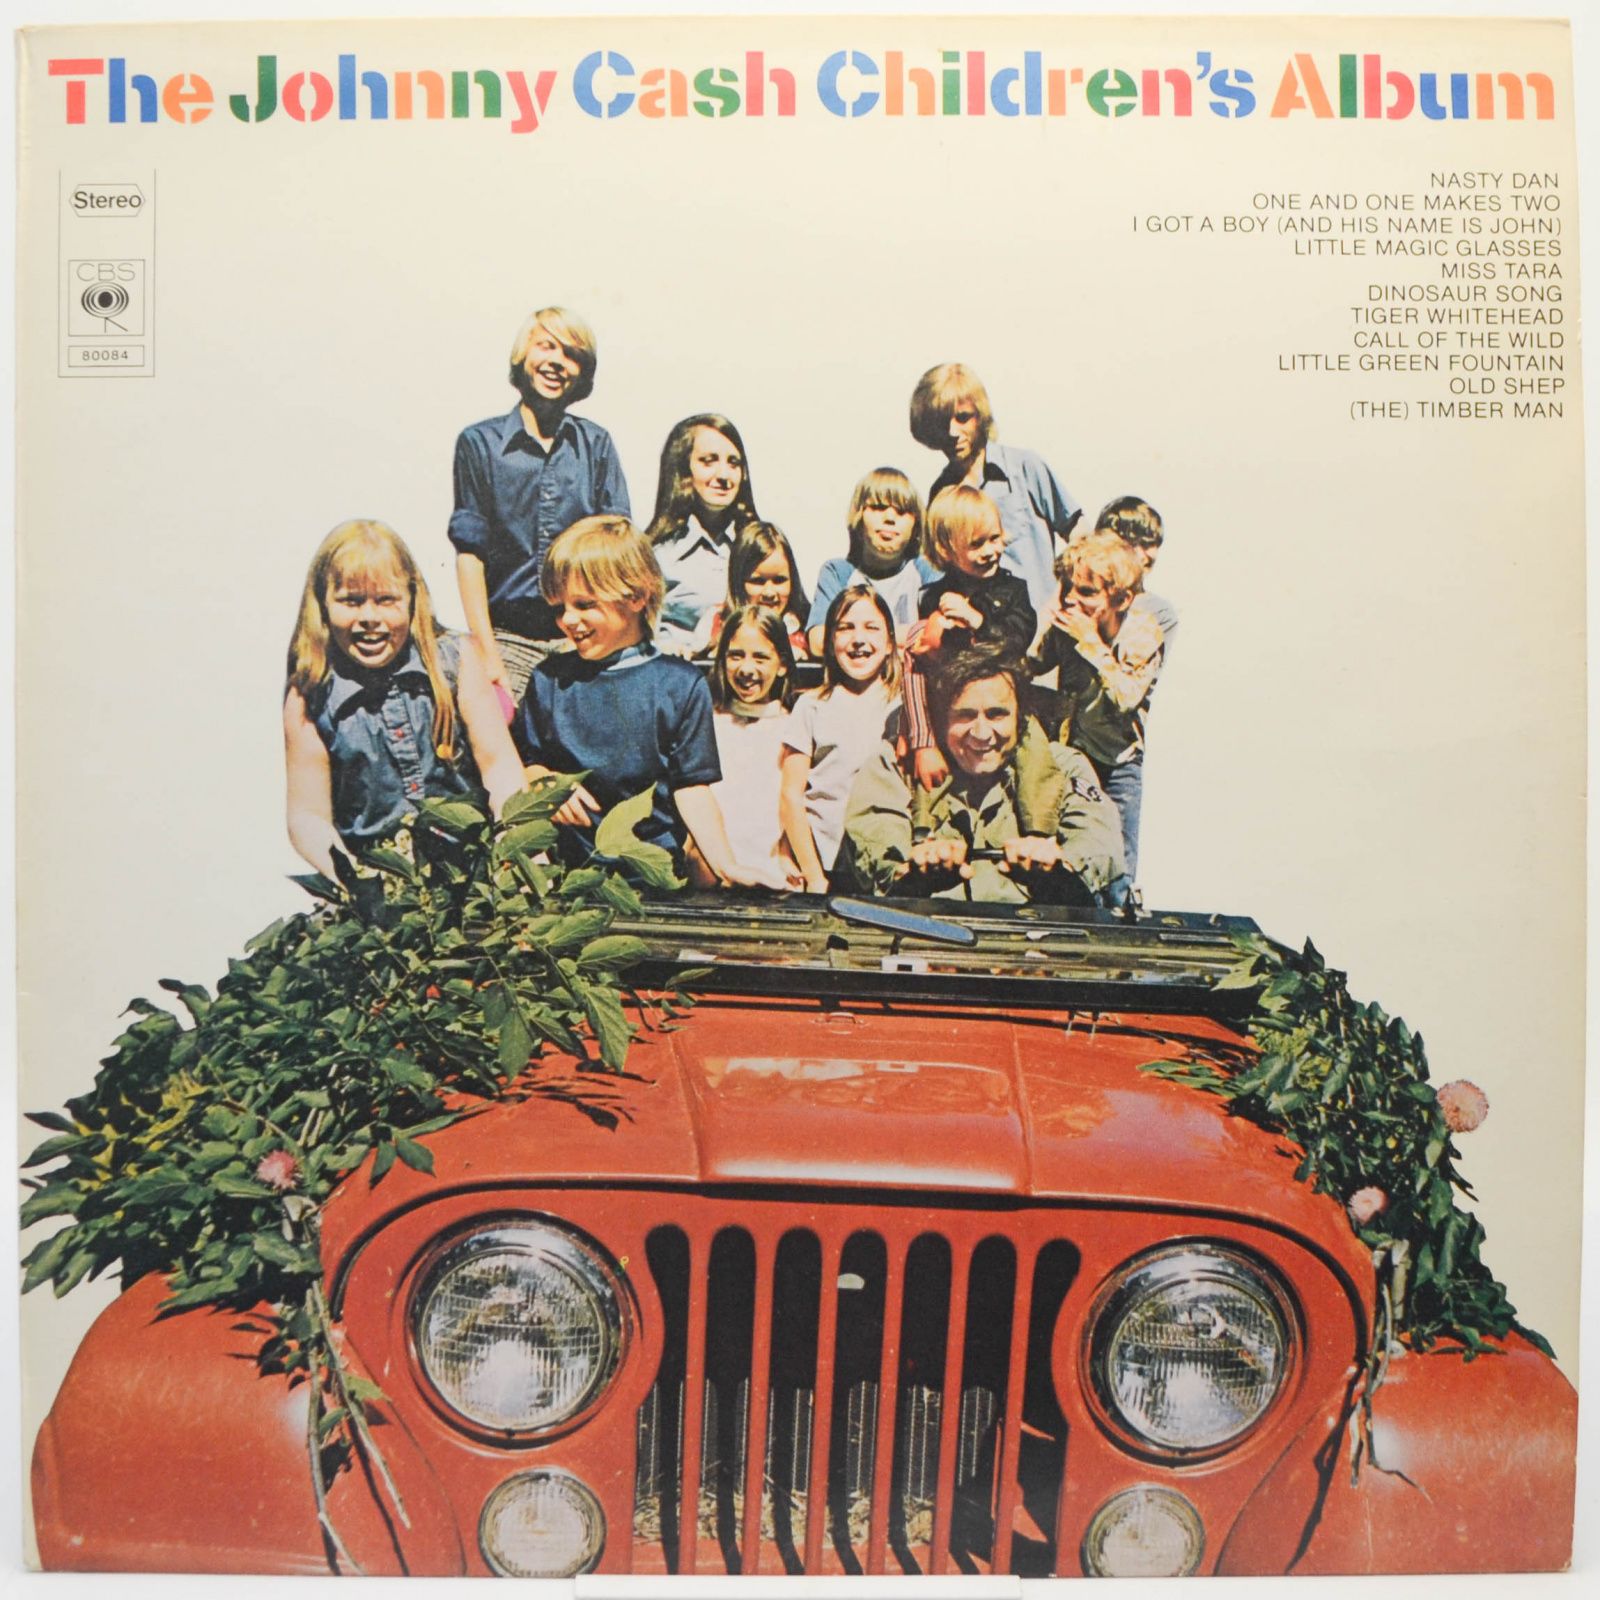 The Johnny Cash Children's Album, 1975